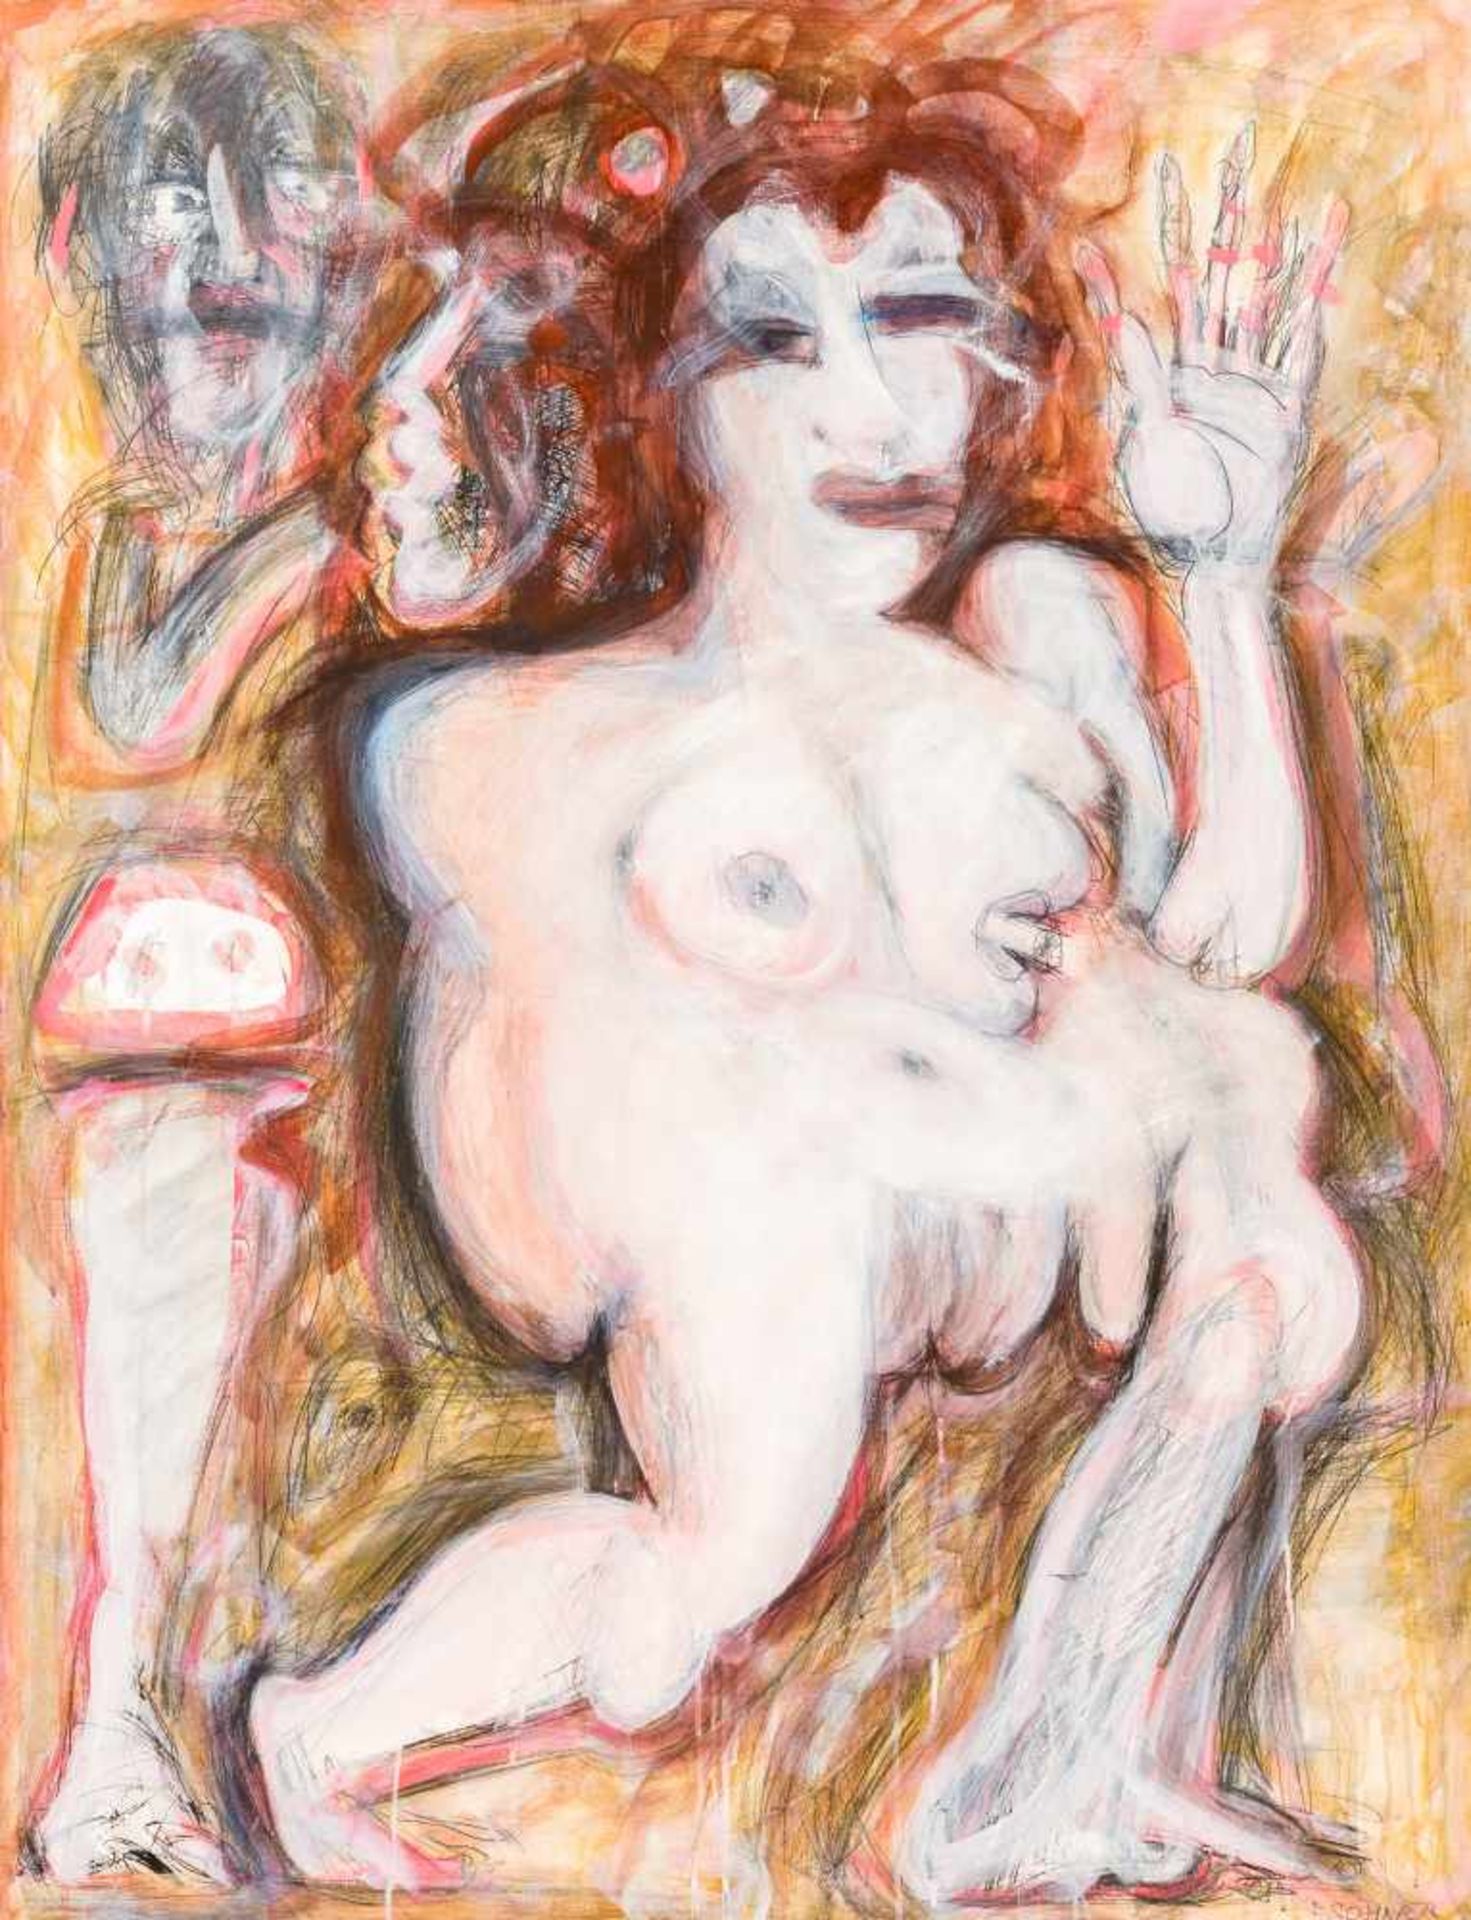 Adolf Frohner (hs art)Groß-Inzersdorf 1934 - 2007 WienHommage an die Venus von